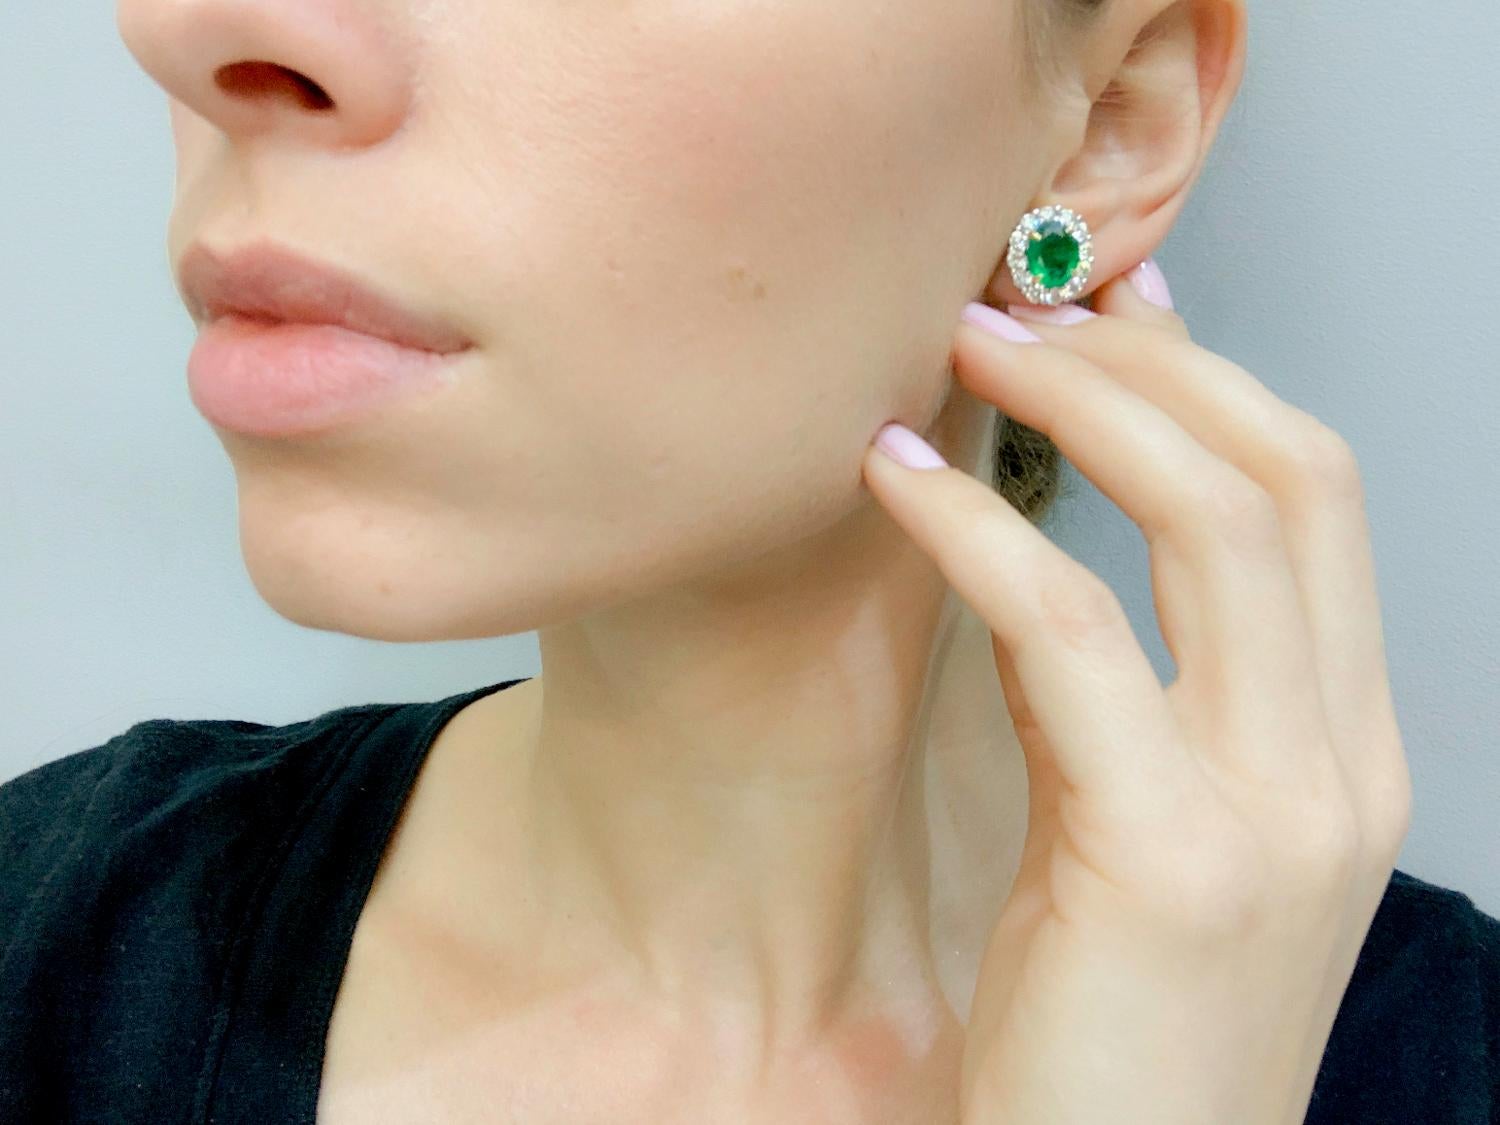 Wir präsentieren unsere atemberaubenden Diamant- und Smaragd-Ohrringe, eine schillernde Verschmelzung von klassischer Eleganz und der zeitlosen Anziehungskraft kostbarer Edelsteine. Diese Ohrringe schmücken Ihre Ohren mit Raffinesse. Das bezaubernde